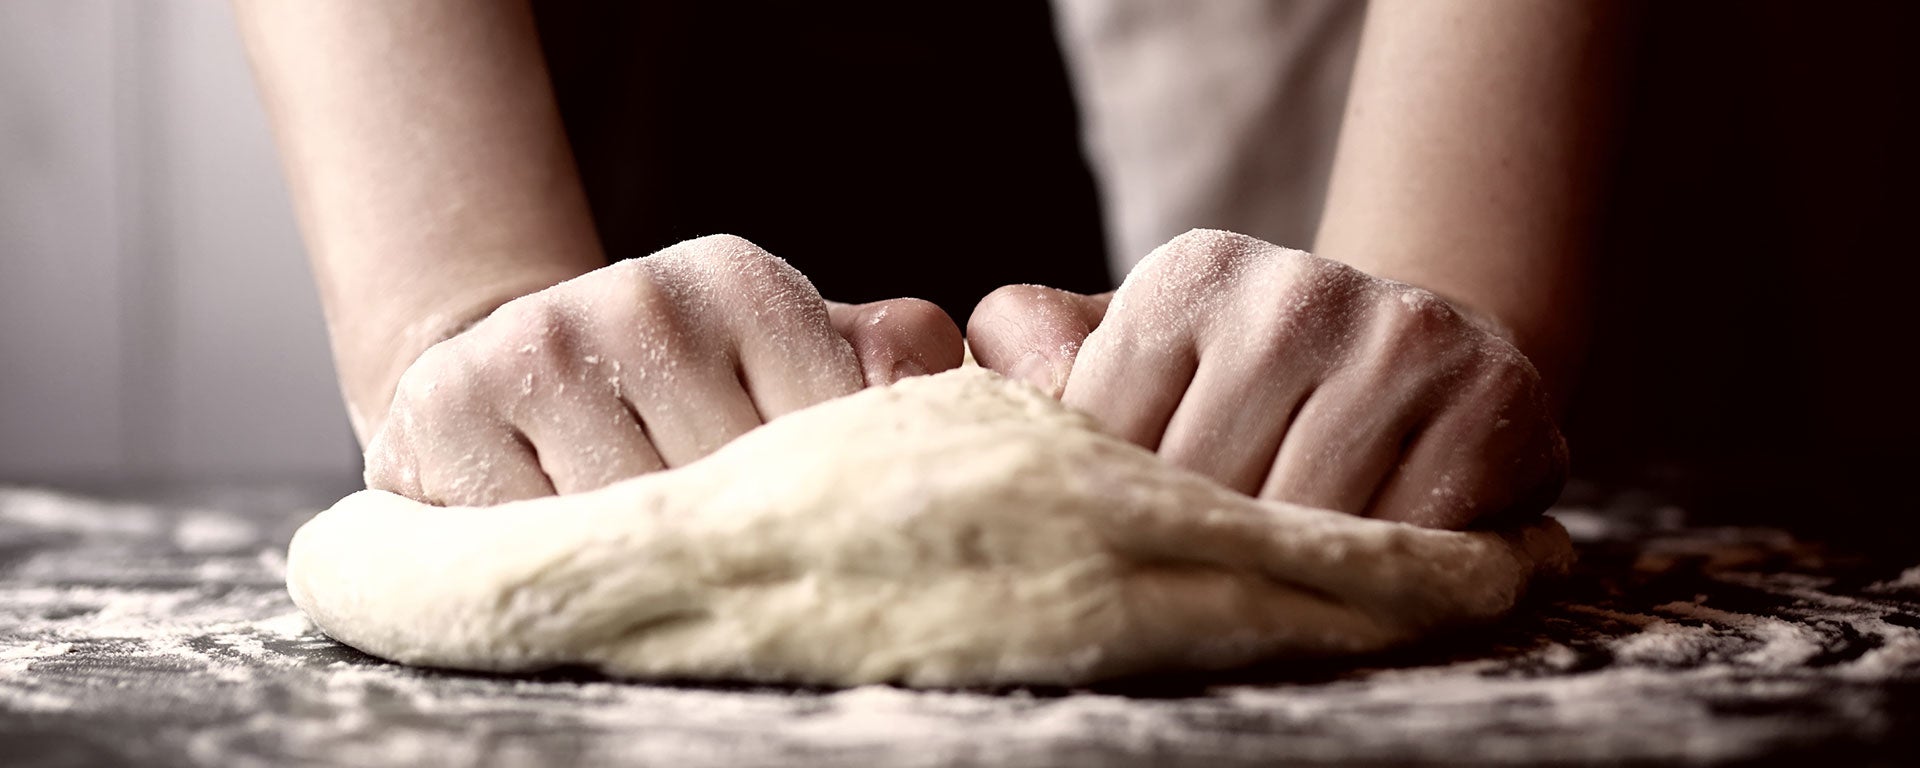 dough knead baking tips